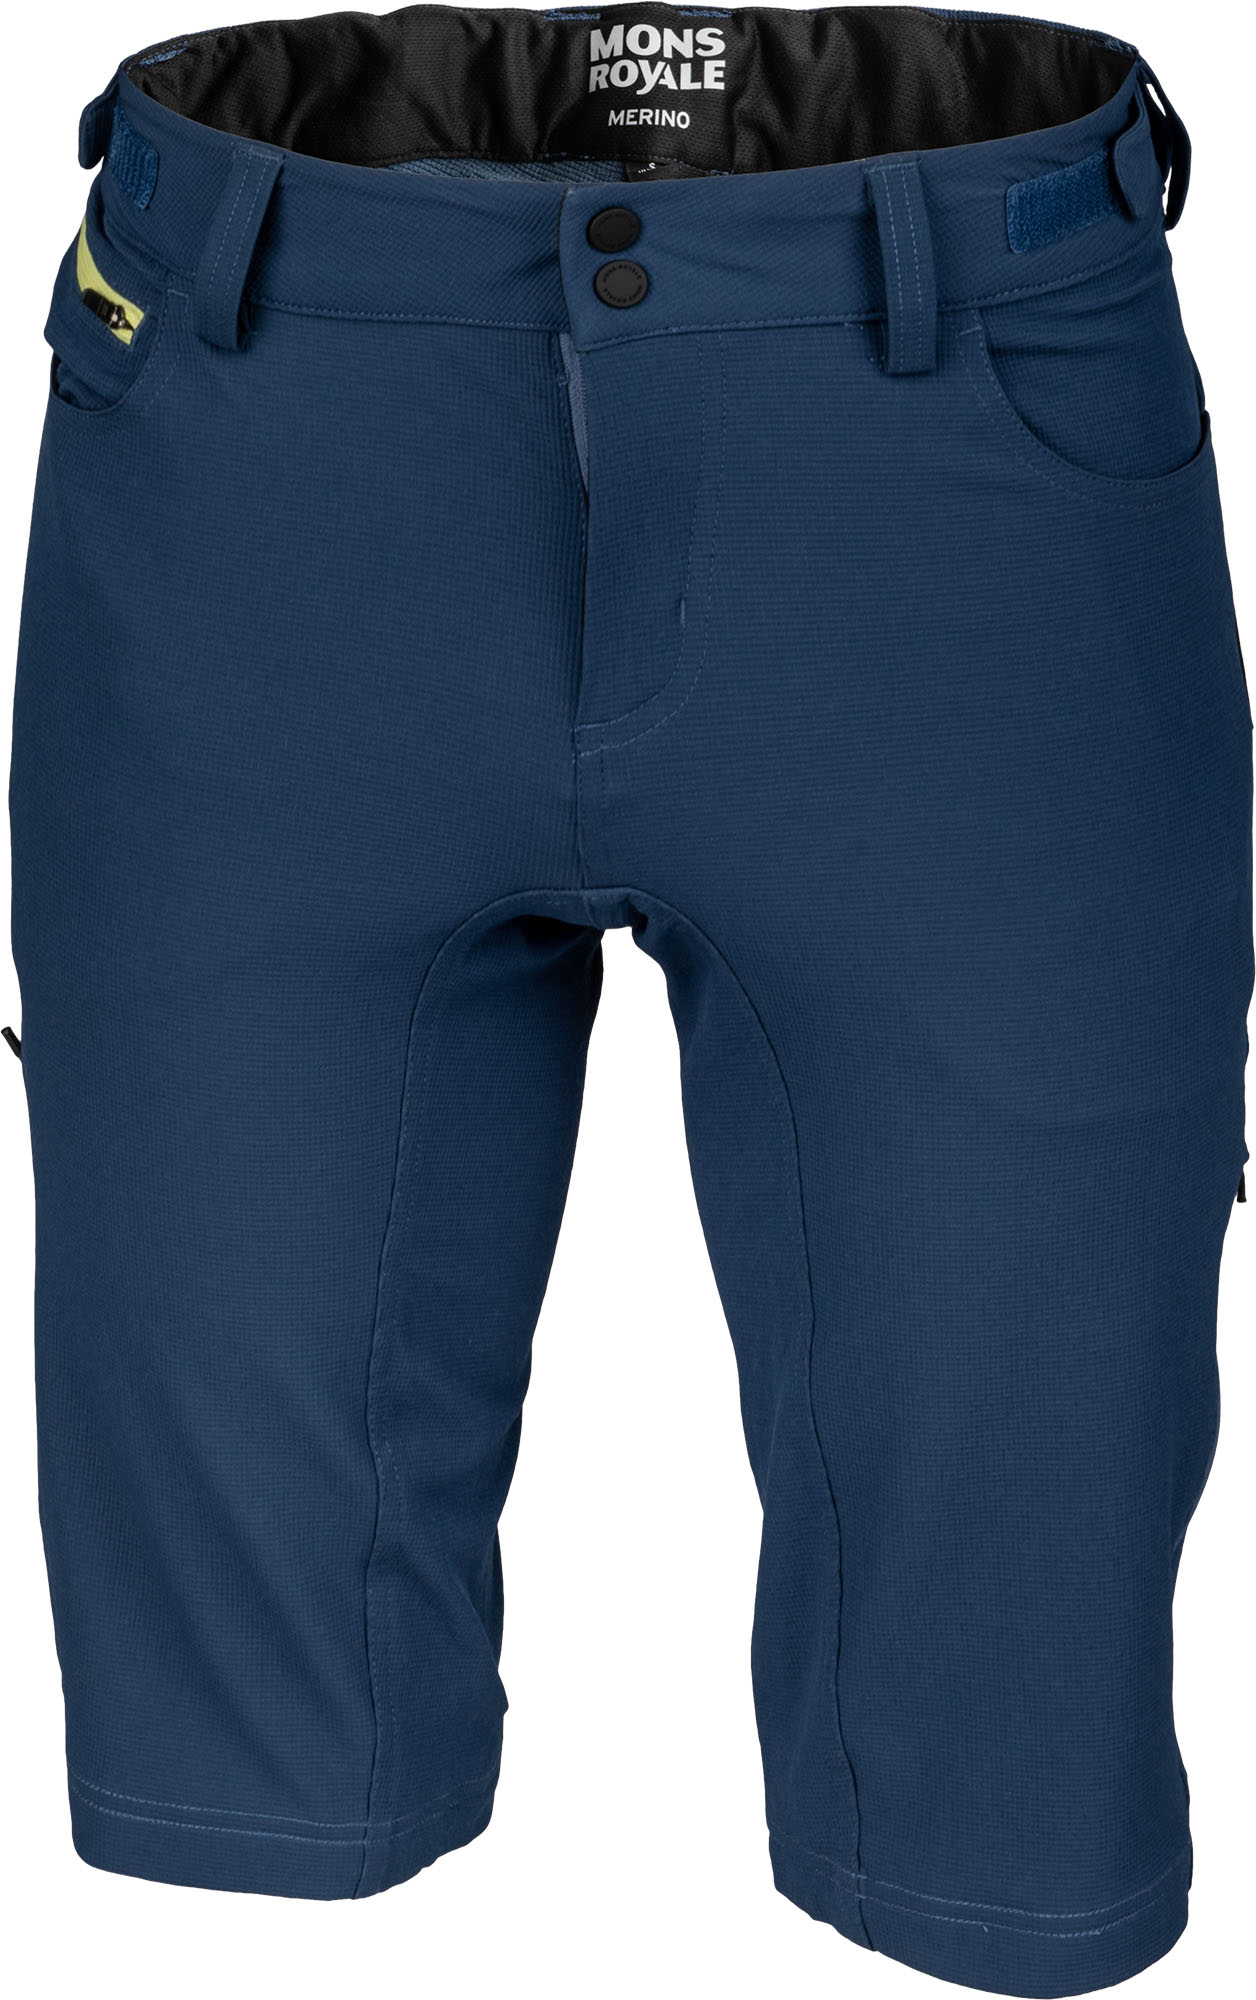 Мъжки функционални панталонки от мерино вълна